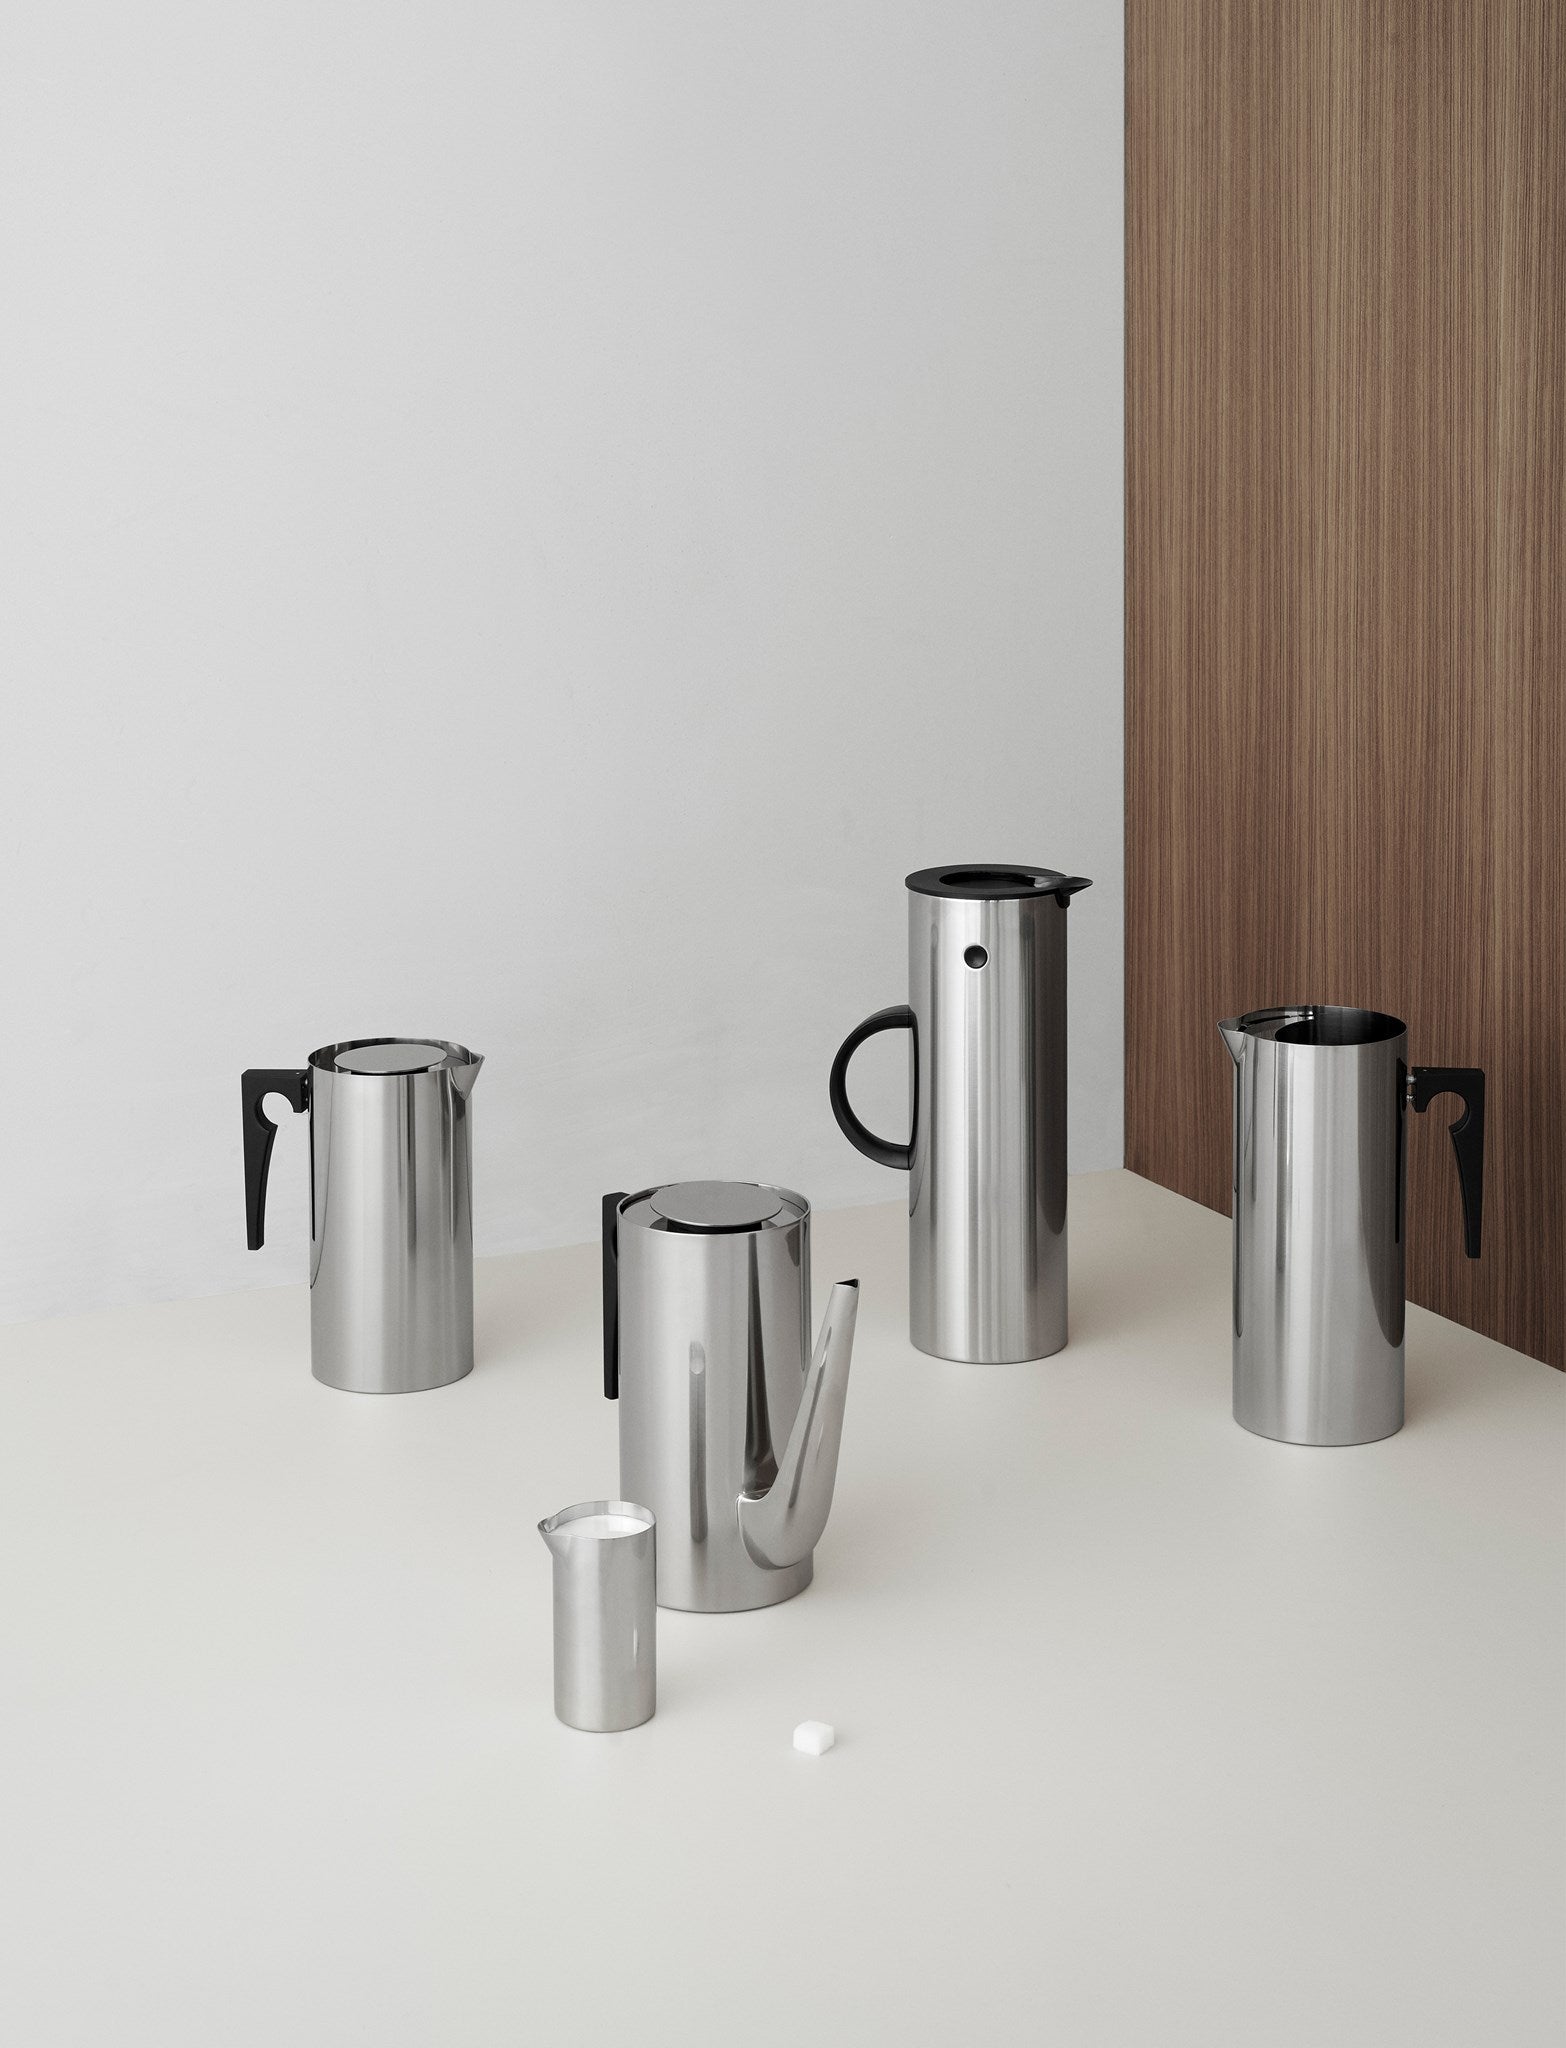 Stelton Arne Jacobsen Coffee Pan 1,5 L